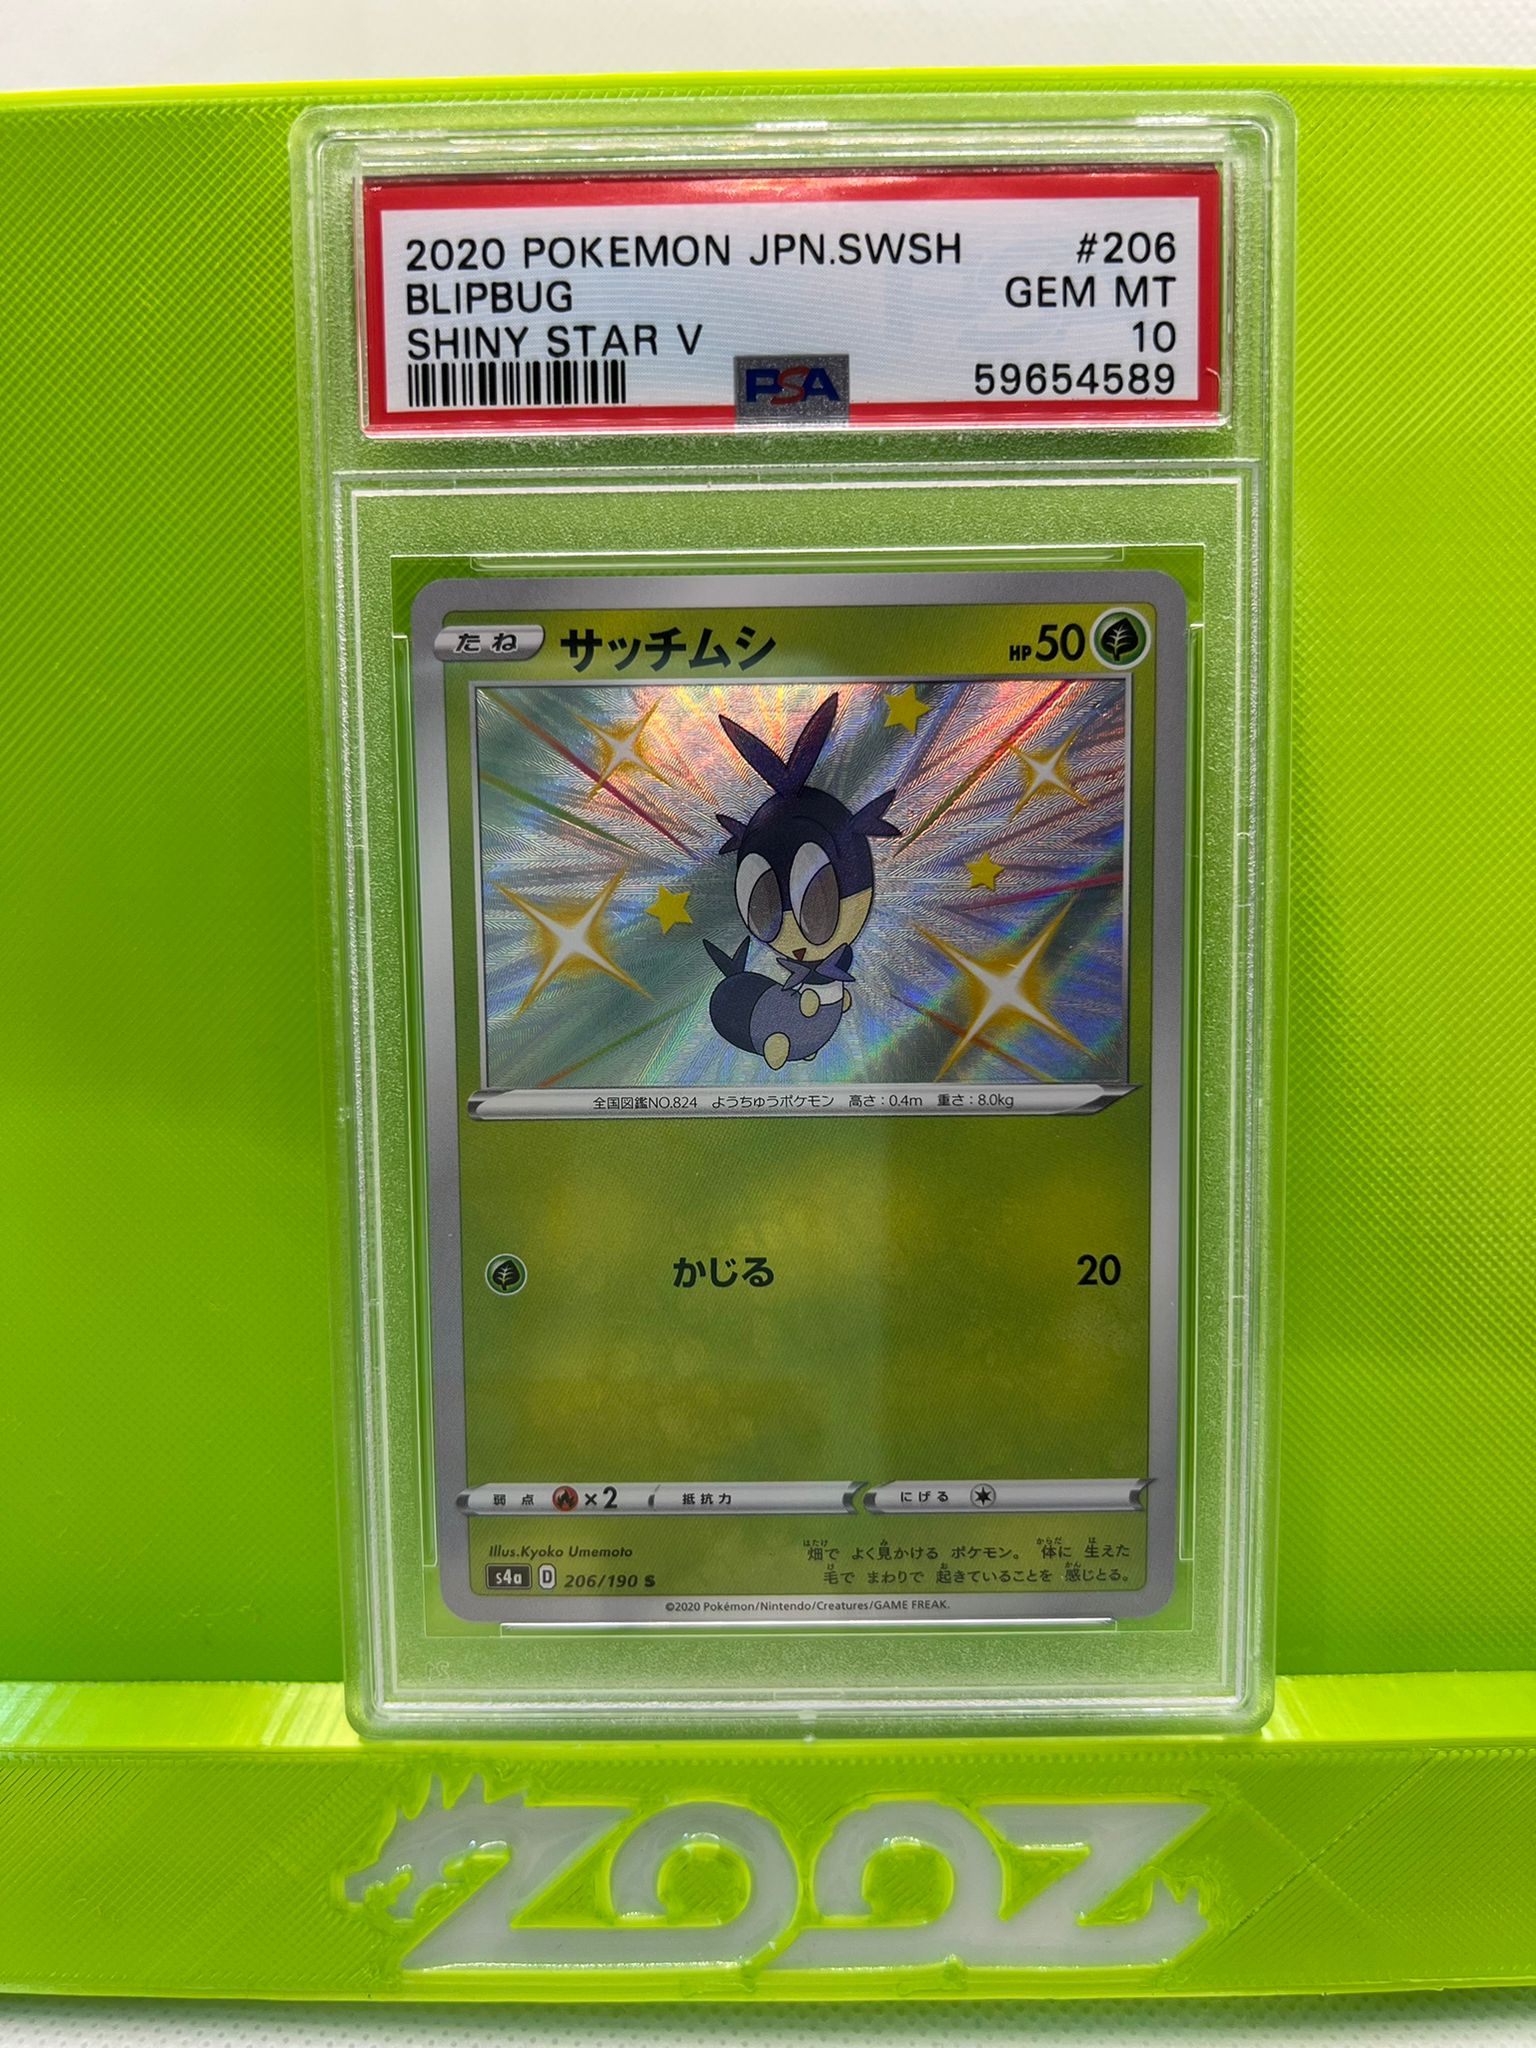 PSA 10 Pokemon Japanese SWSH Blipbug #206 Shiny Star V